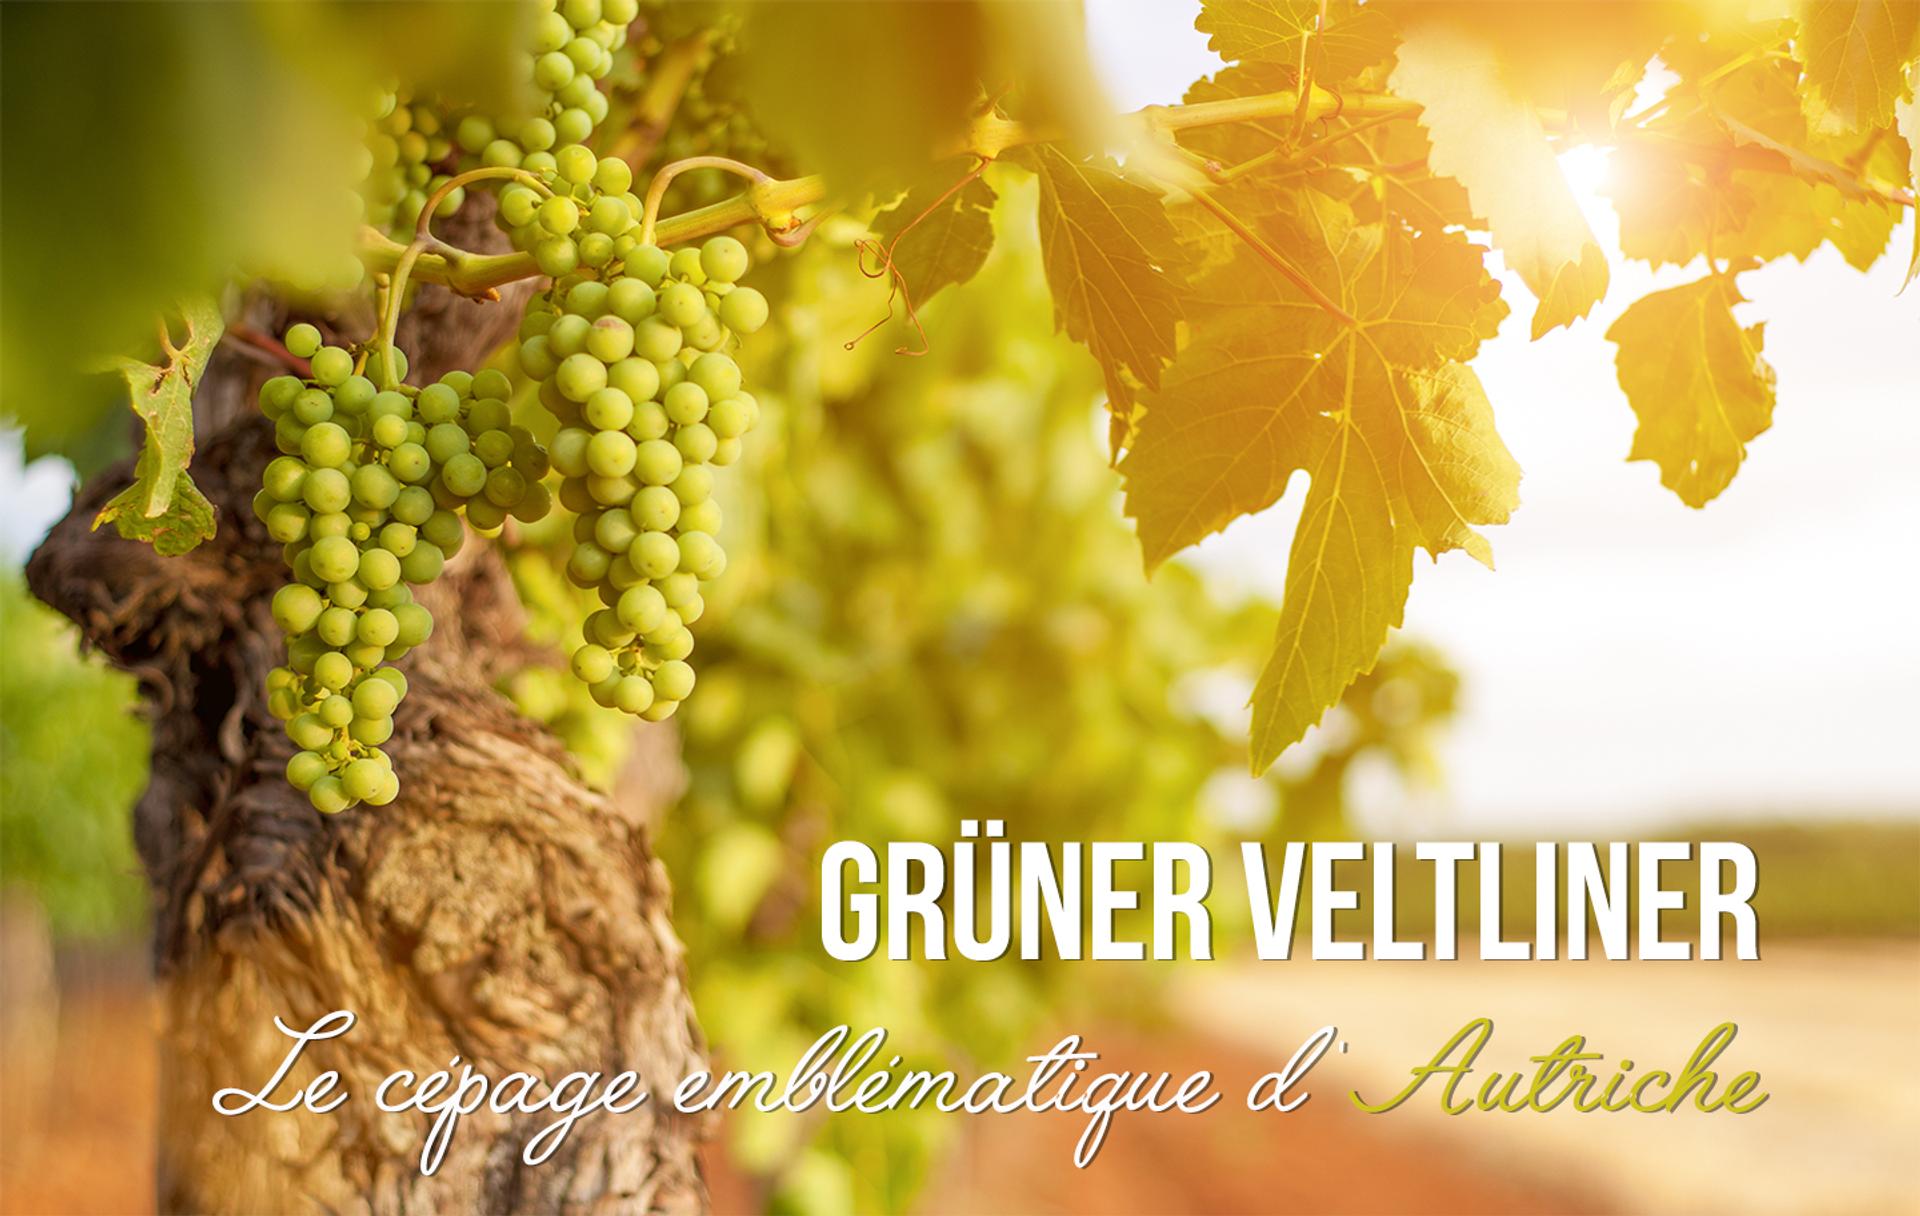 Grüner Veltliner, le cépage emblématique de l'Autriche